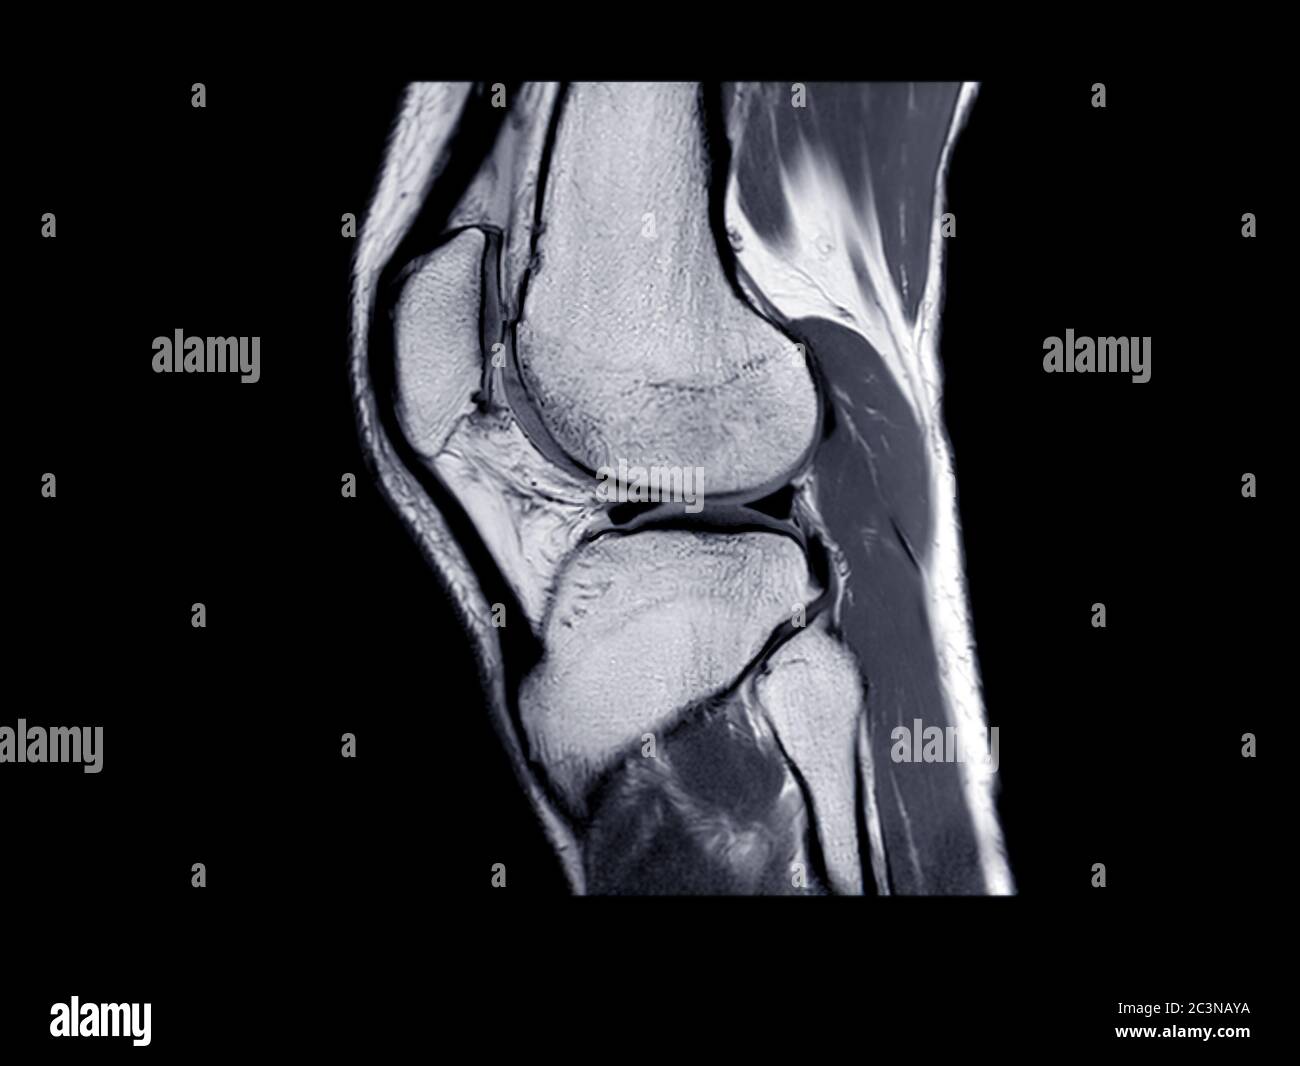 Vue sagittale d'imagerie par résonance magnétique ou articulation du genou IRM pour détecter la déchirure ou l'entorse du ligament croisé antérieur (ACL). Banque D'Images